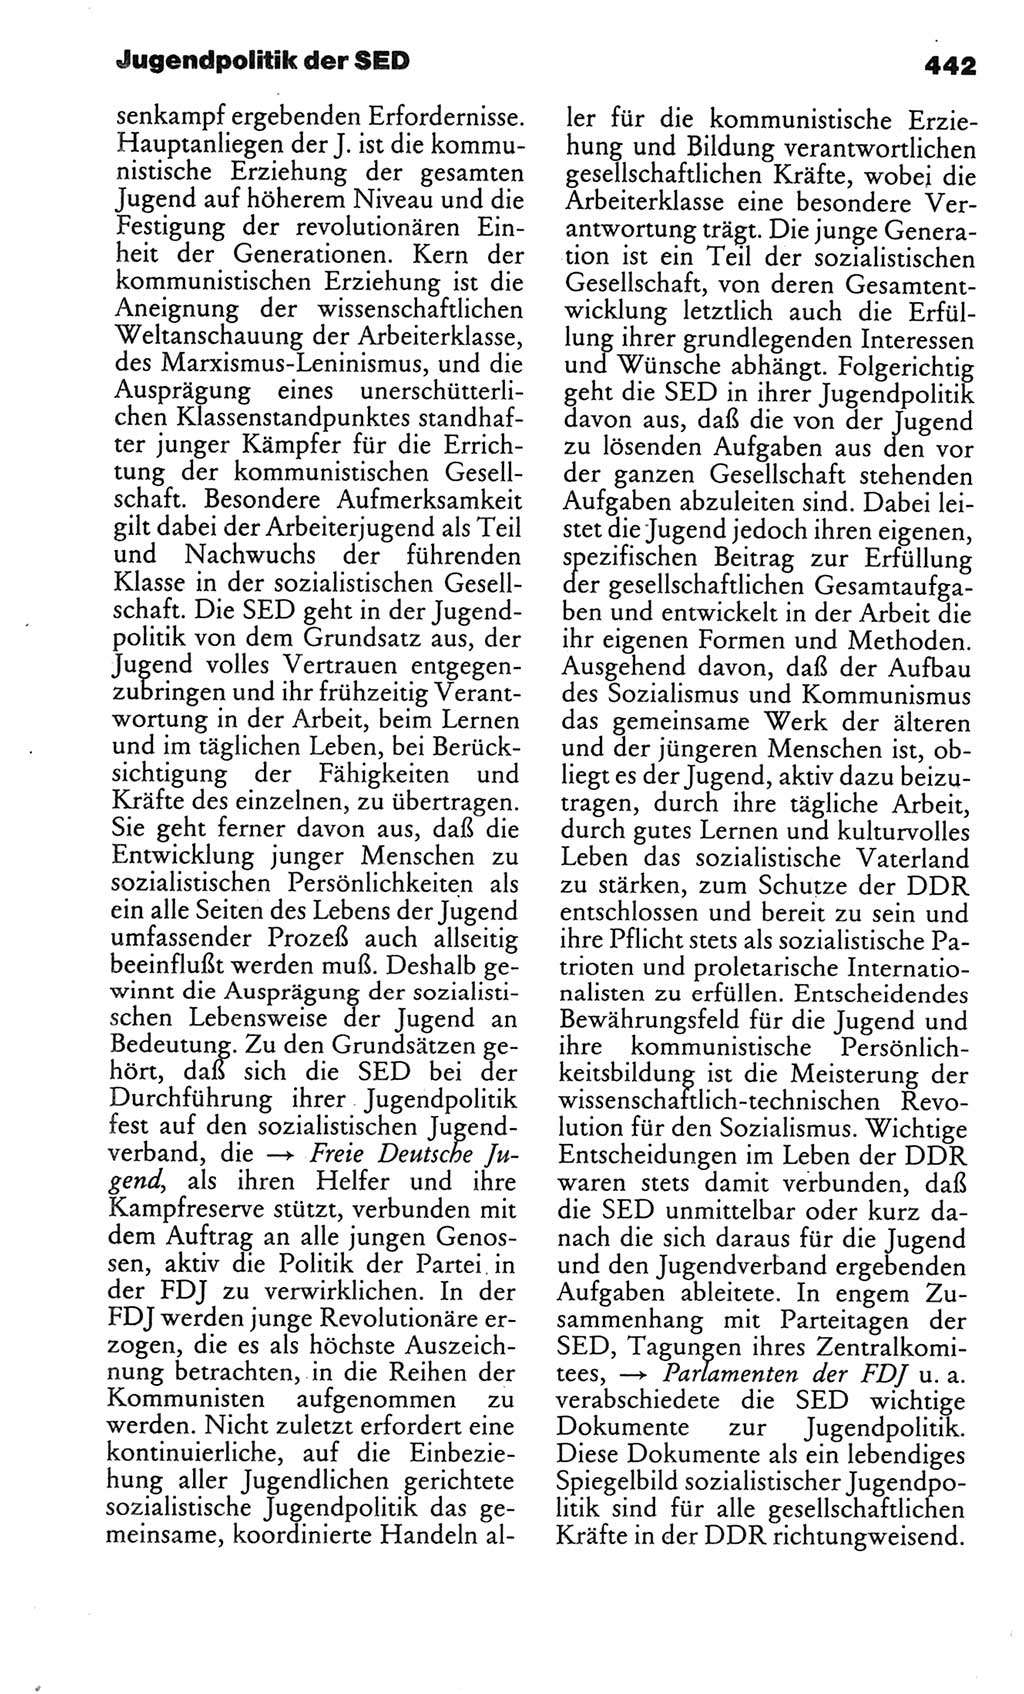 Kleines politisches Wörterbuch [Deutsche Demokratische Republik (DDR)] 1986, Seite 442 (Kl. pol. Wb. DDR 1986, S. 442)